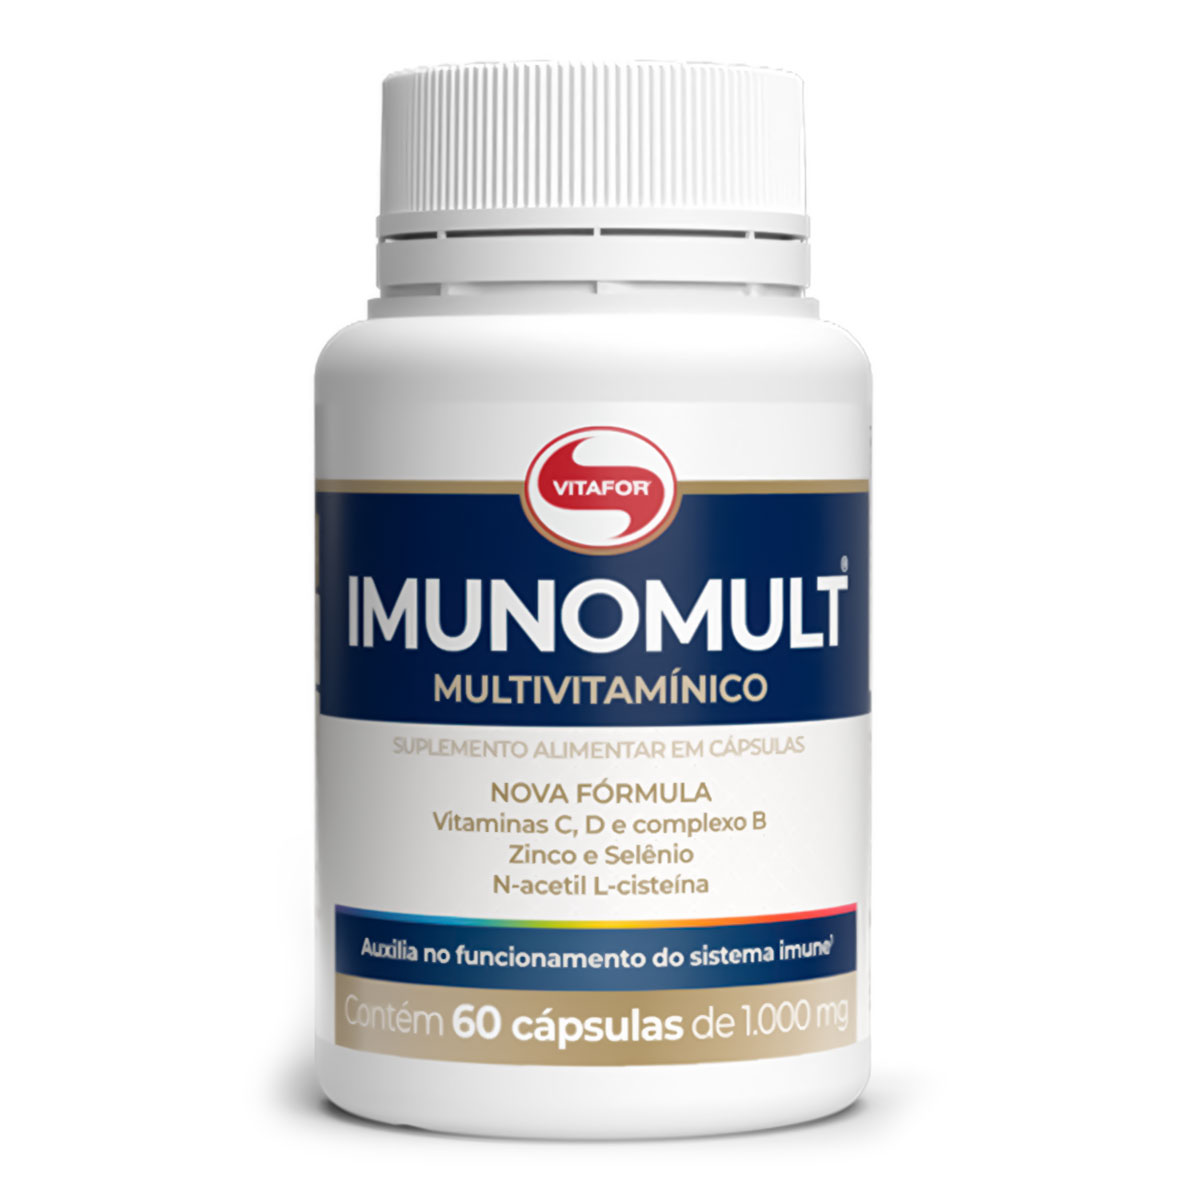 ImunoMult Vitafor (60 Cápsulas)